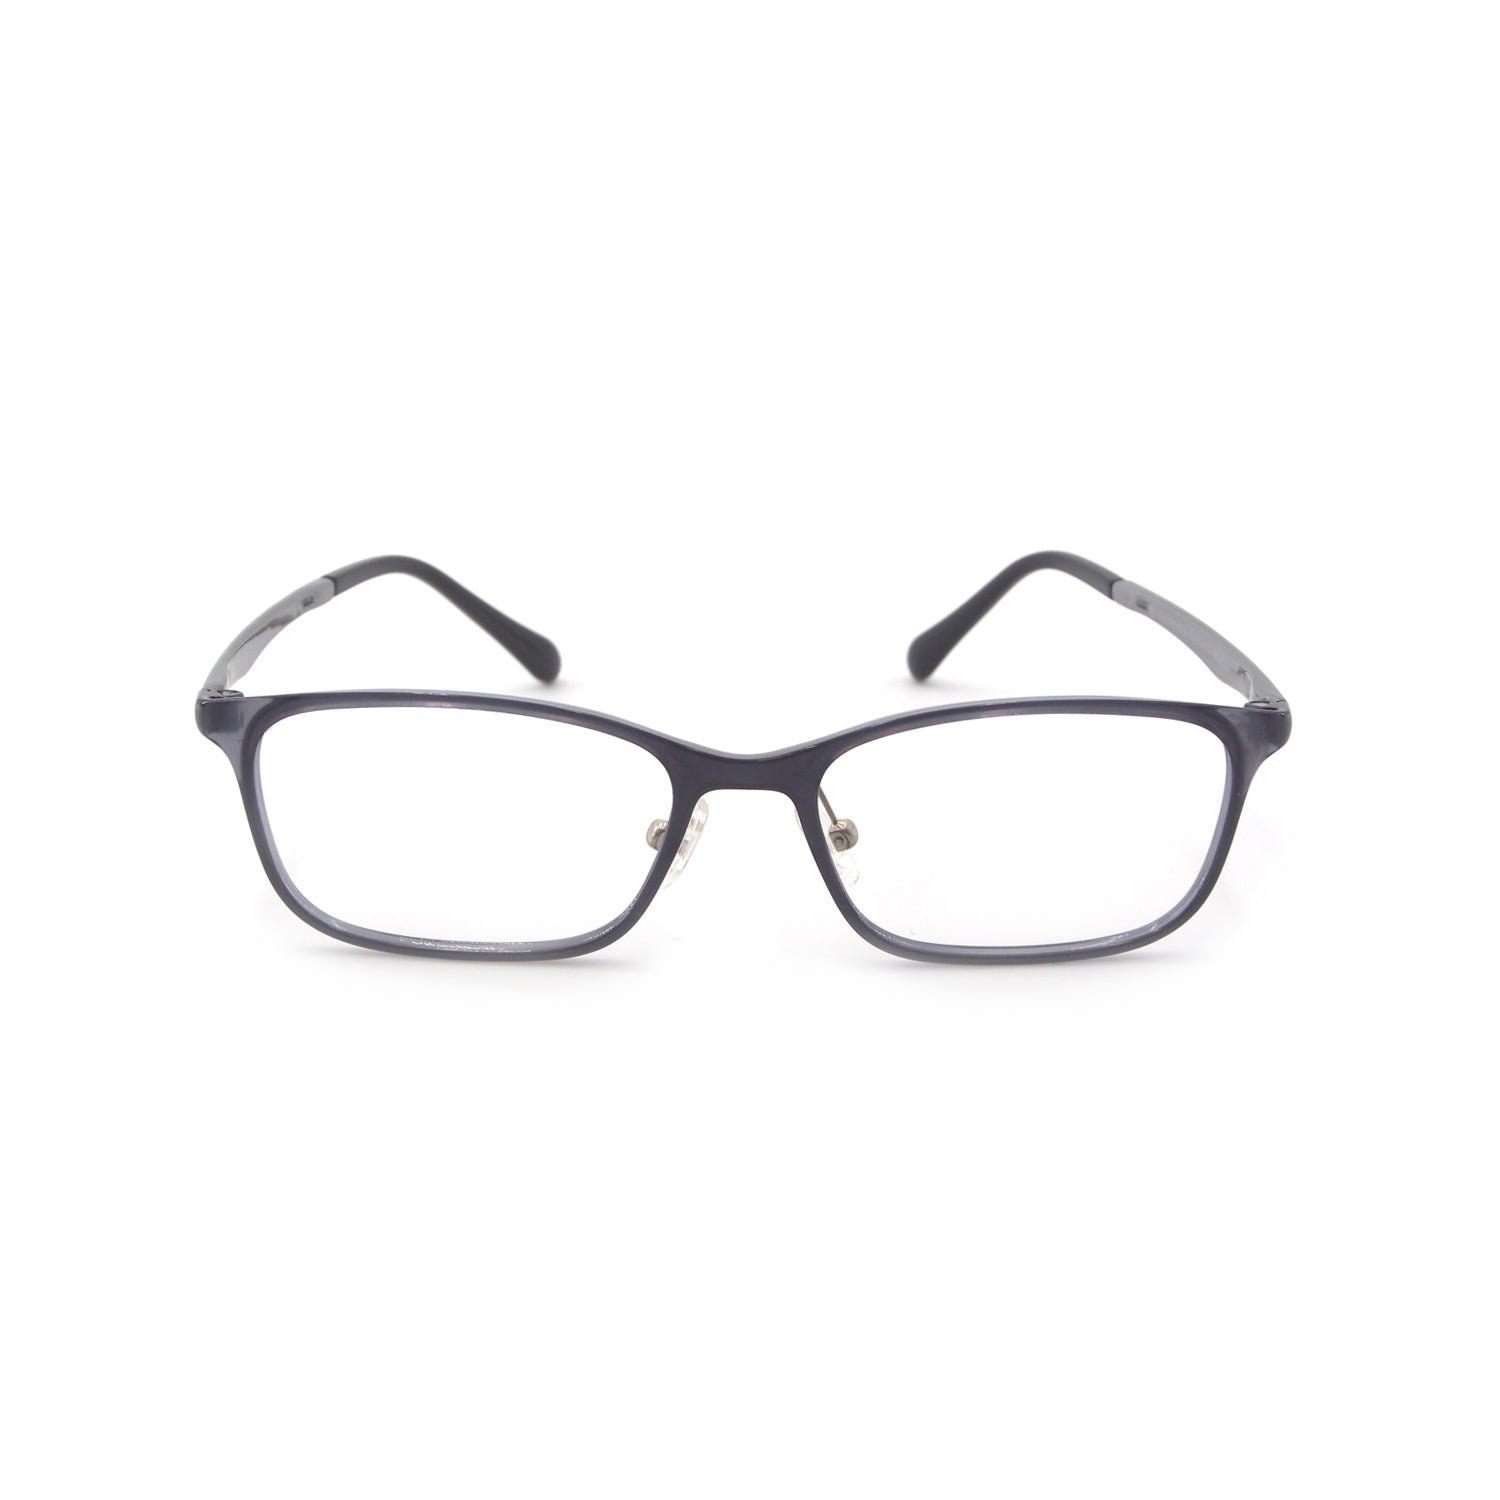 Zephyr in Spectre Grey Eyeglasses - sightonomy